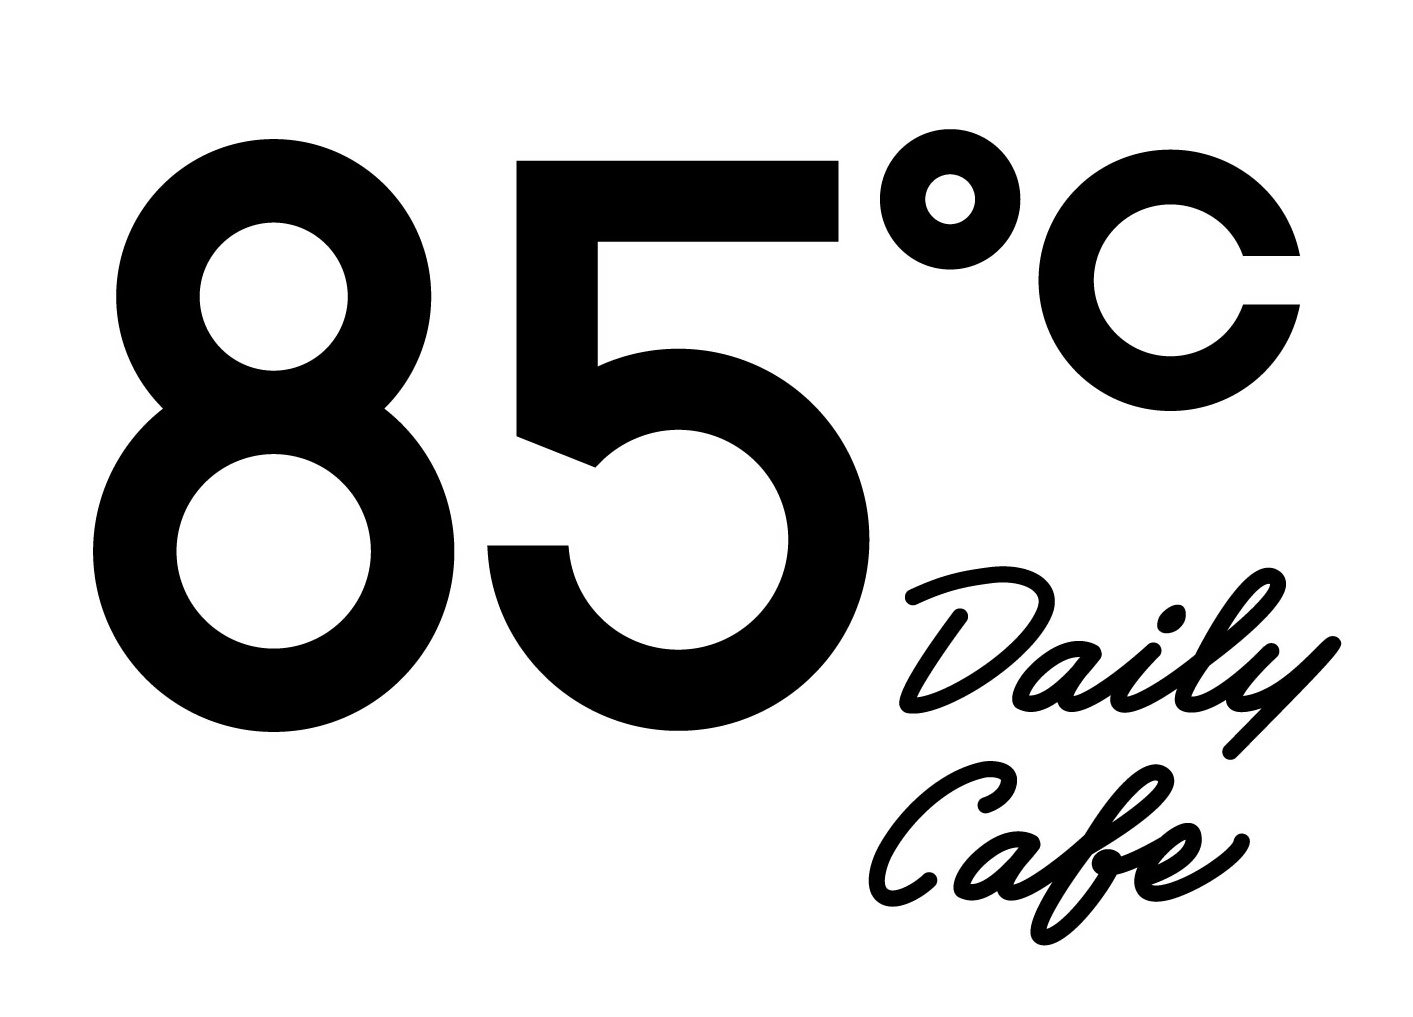  85 ÂºC DAILY CAFE